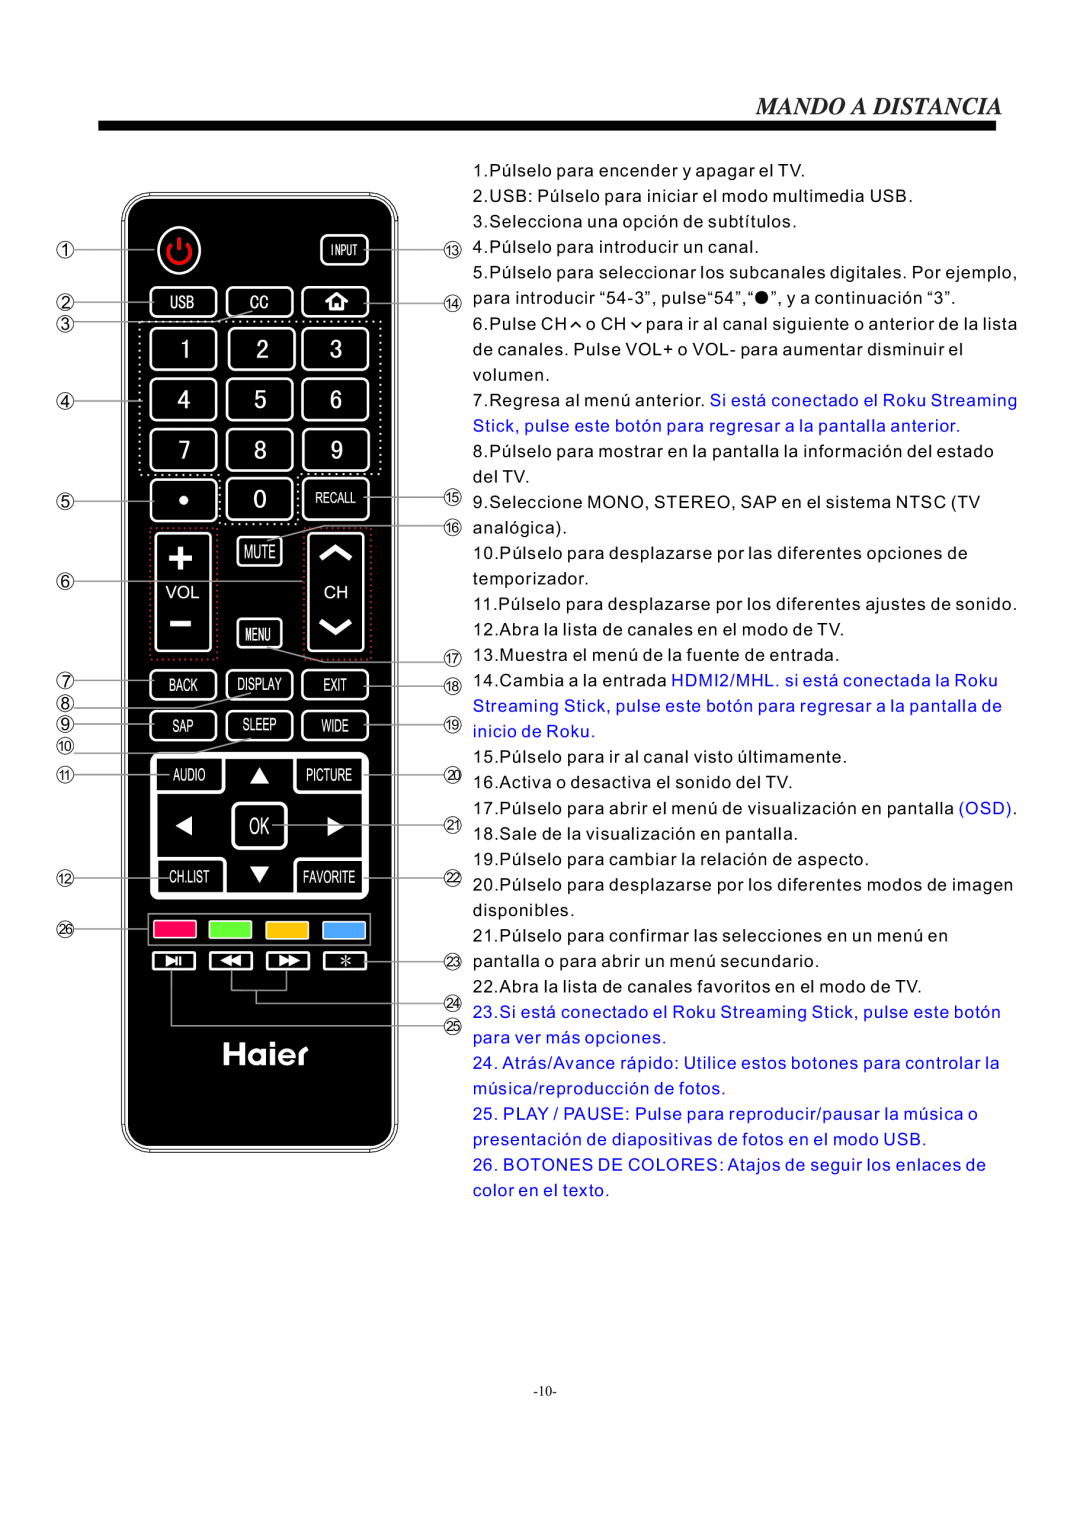 Haier LE24H3380 manual 1.Púlselo para encender y apagar el TV, inicio de Roku 